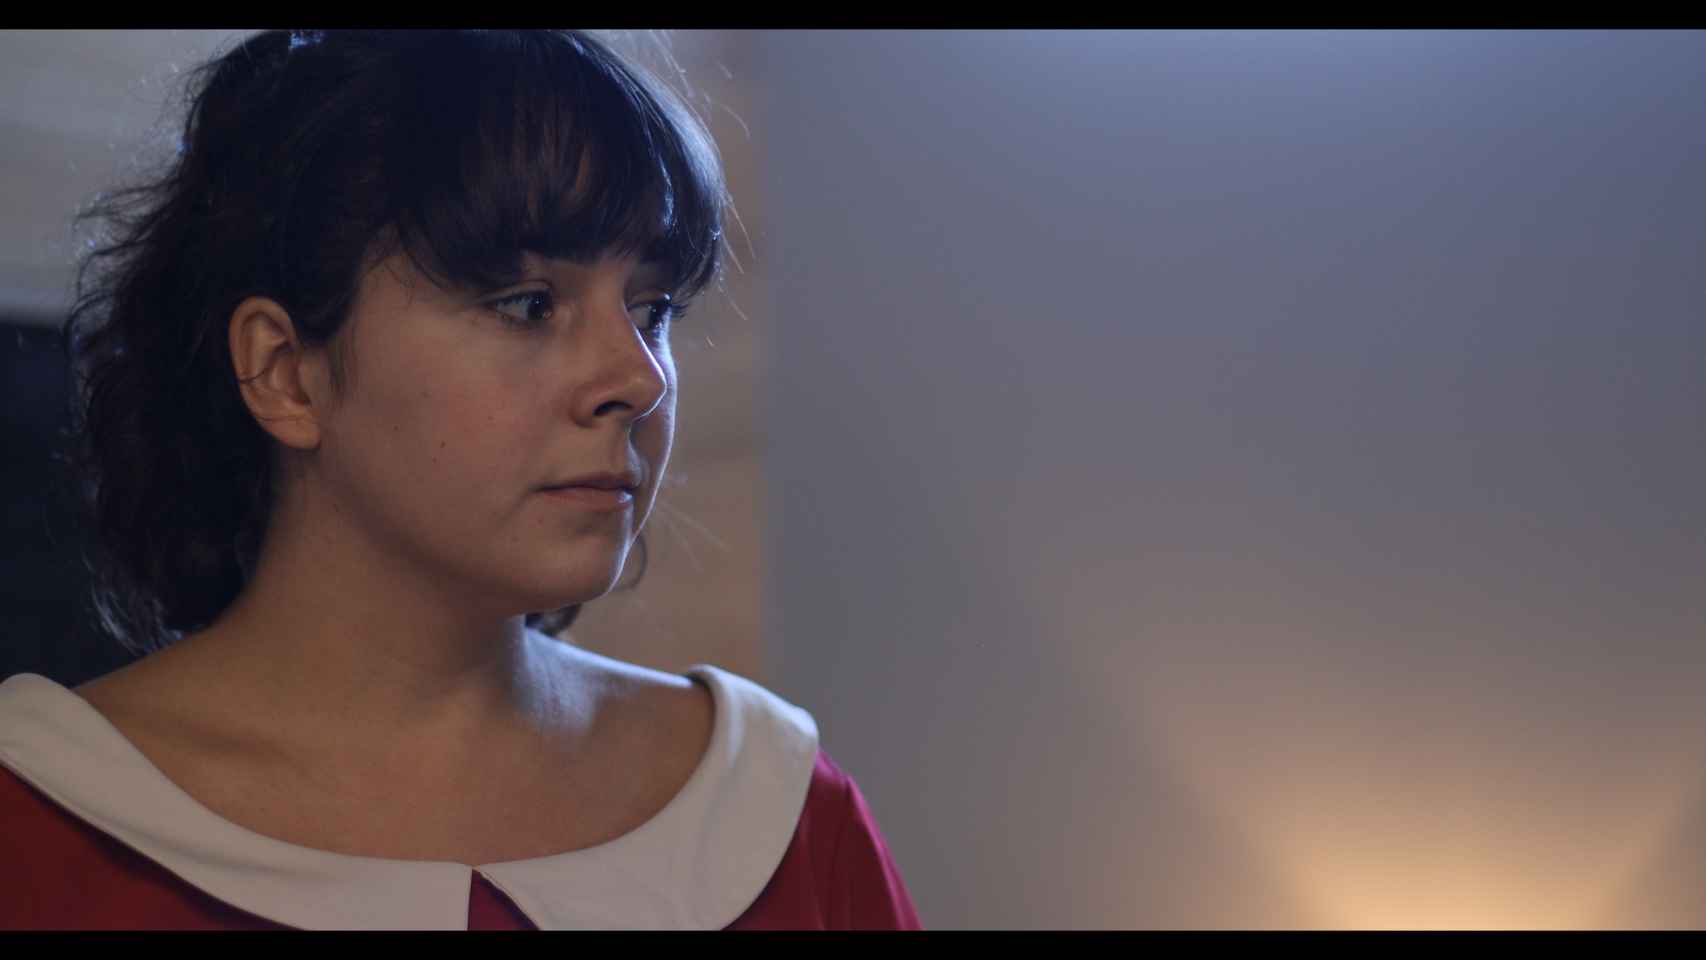 Fotograma del primer corto de Diana López Varela, Feminazi. La protagonista es Laura Míguez.